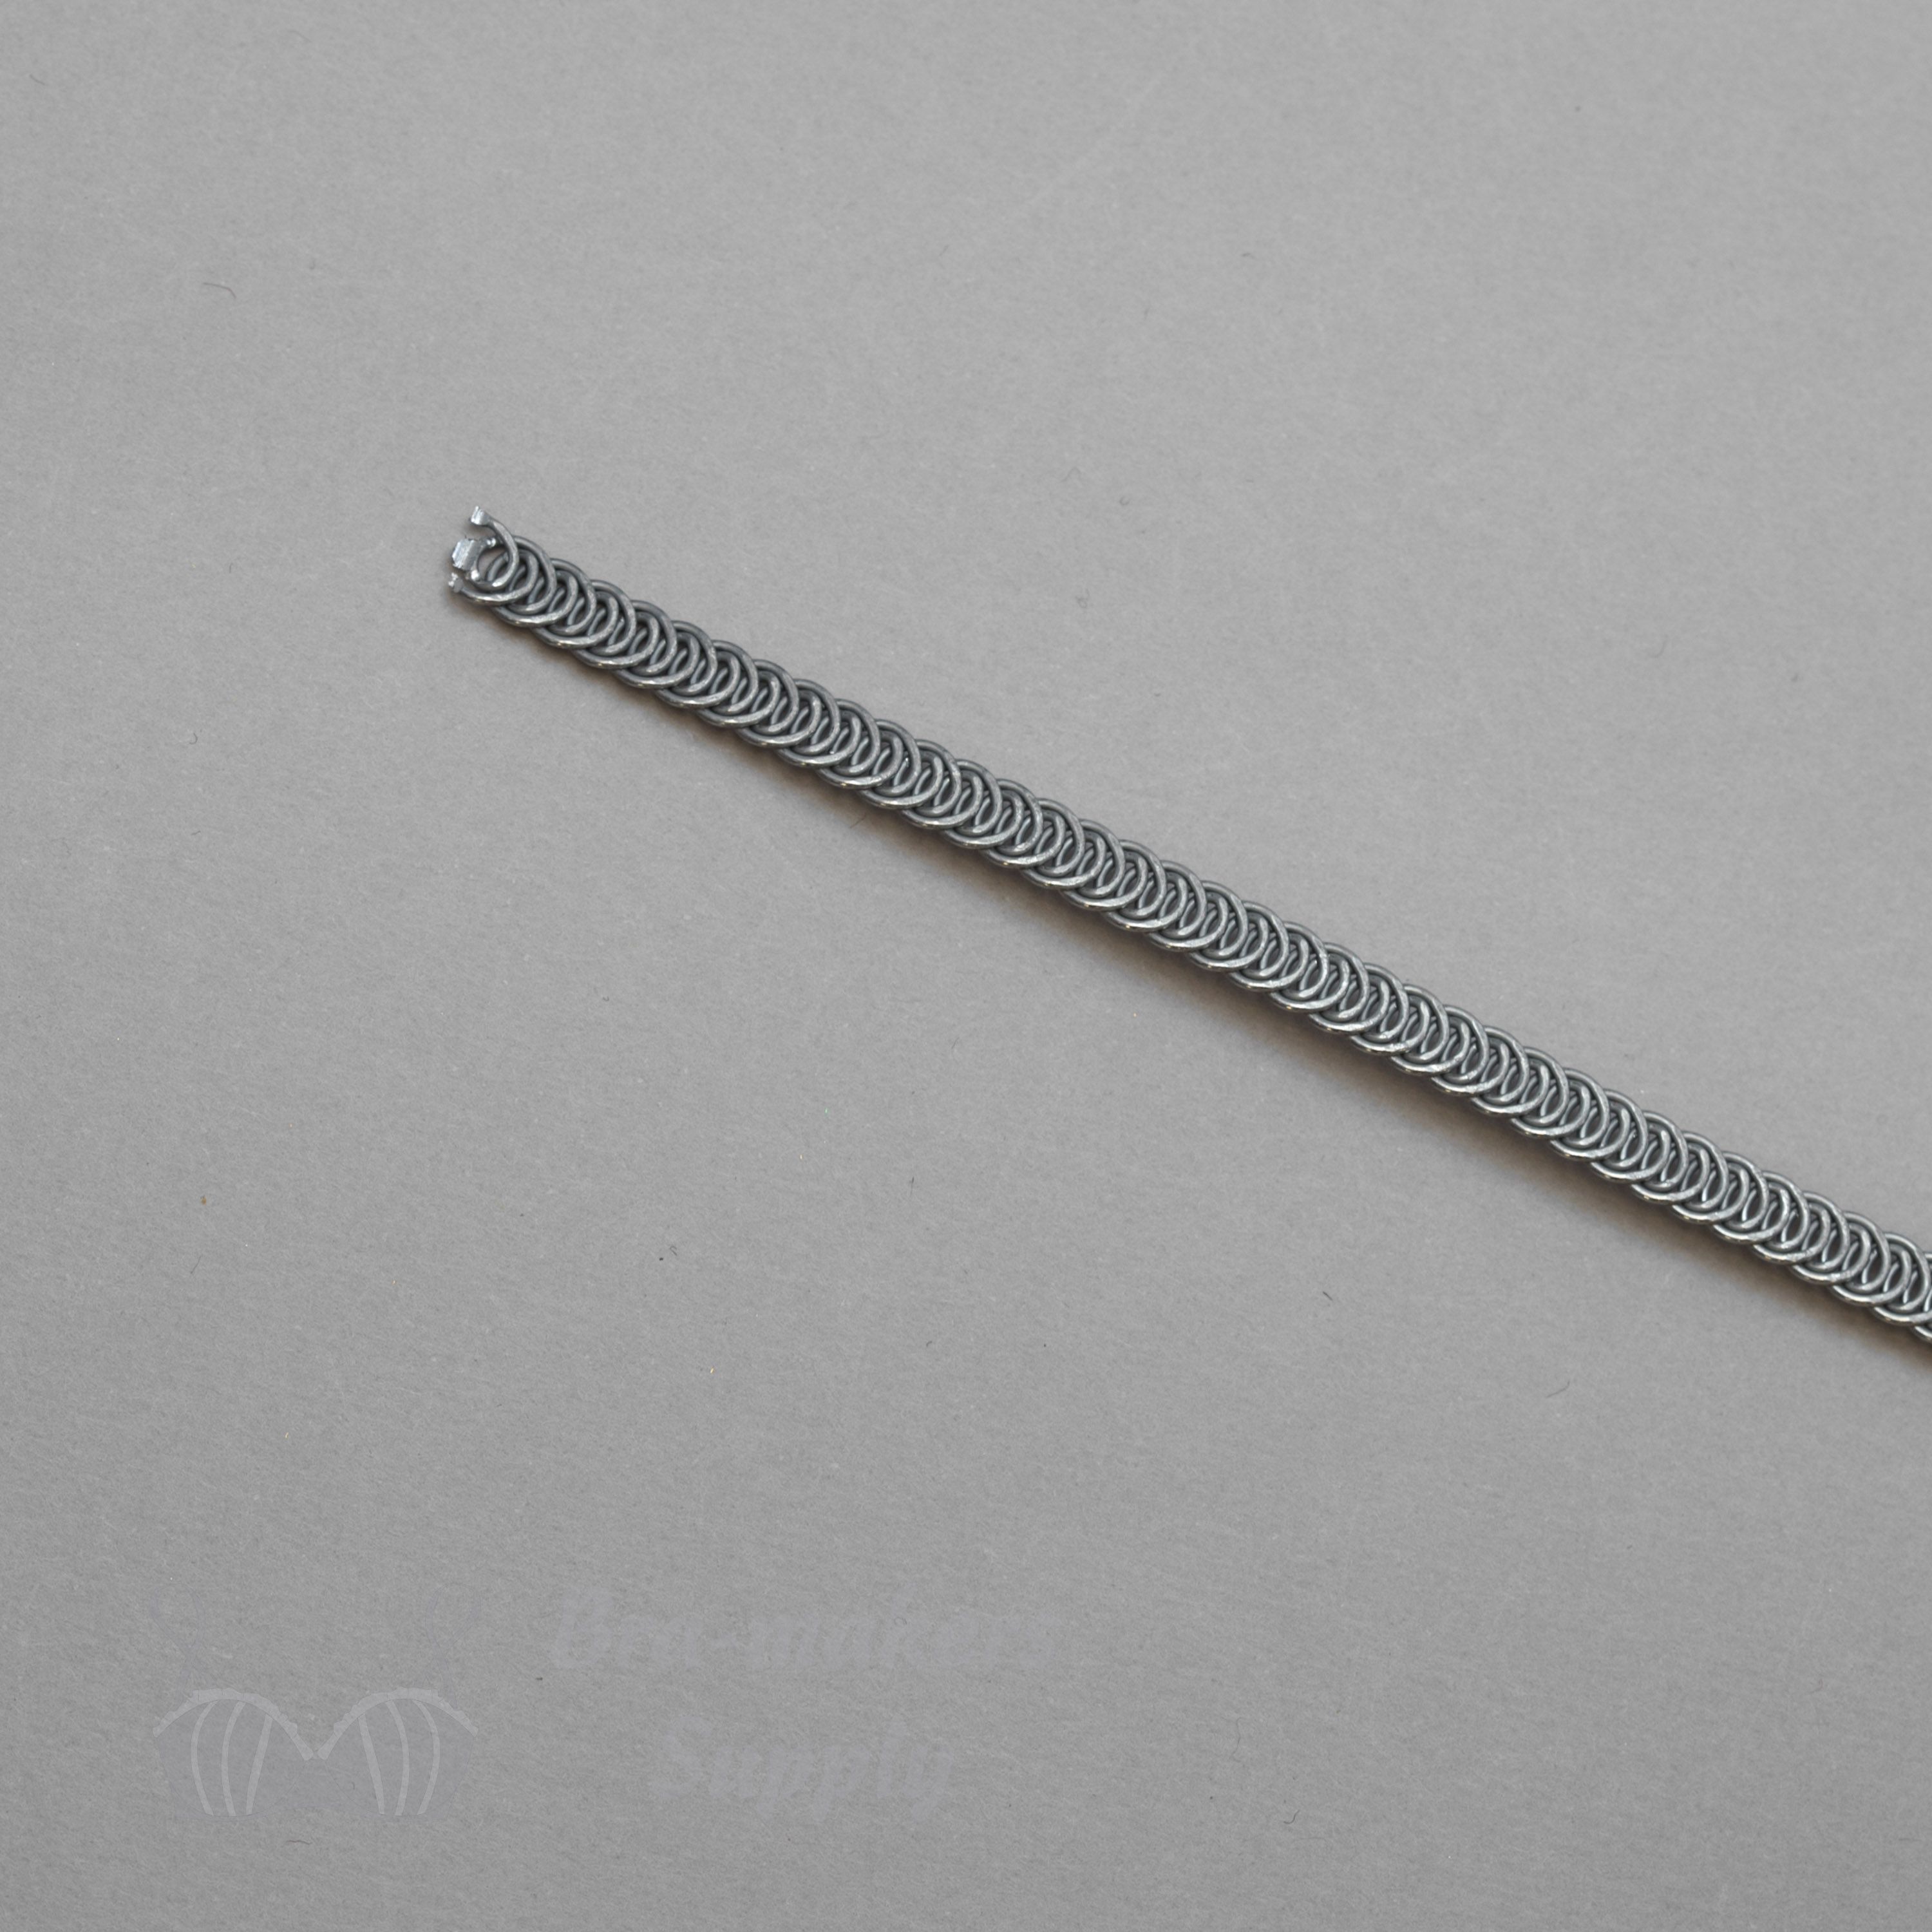 10M 6mm Corset Spiral Boning Spring Steel Corset Boning DIY